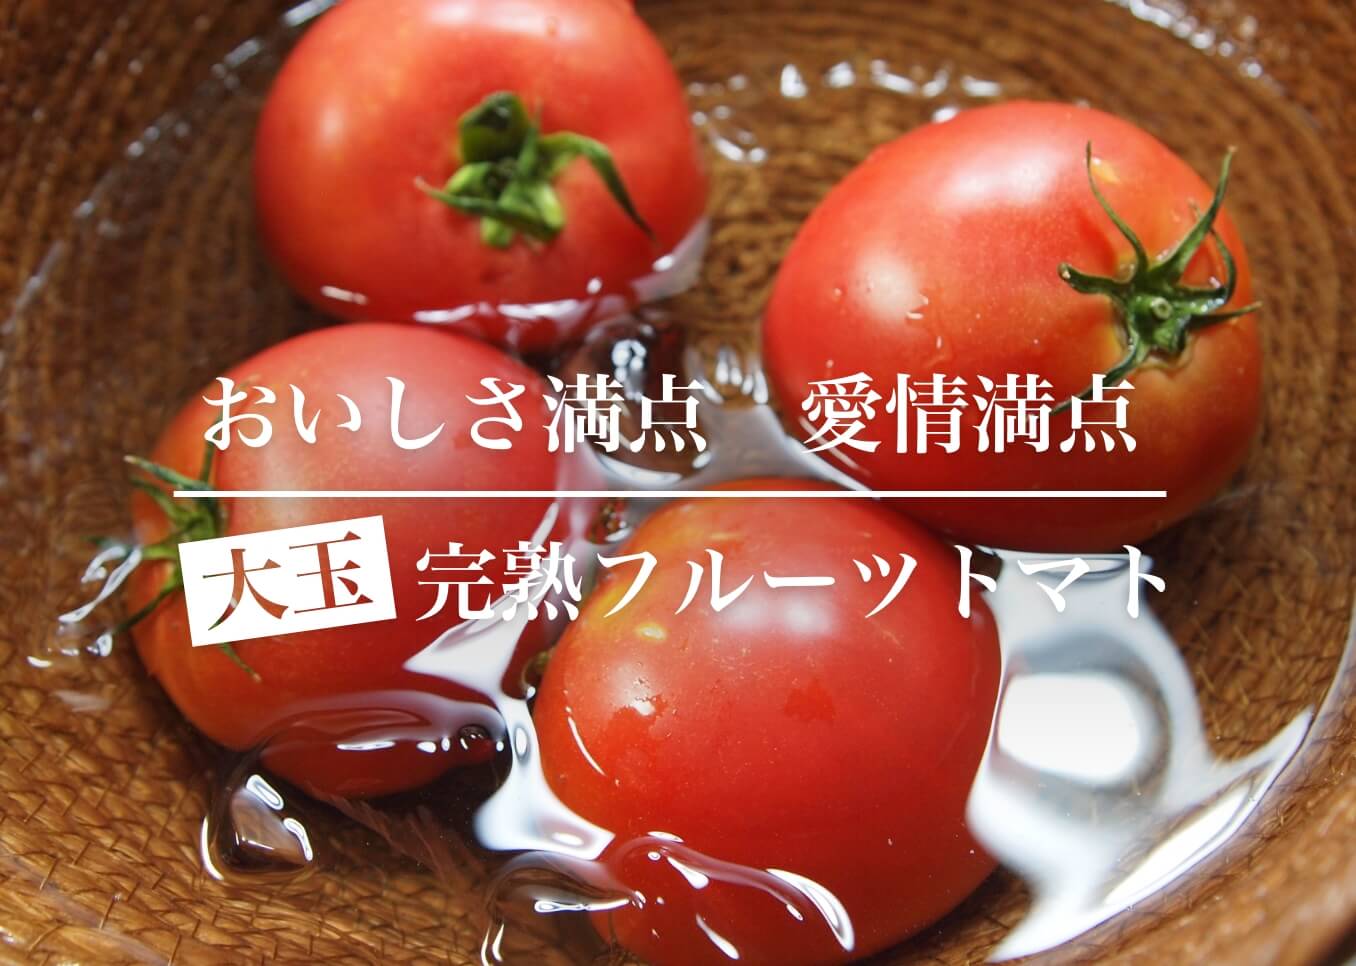 「フルーツトマト」の特徴